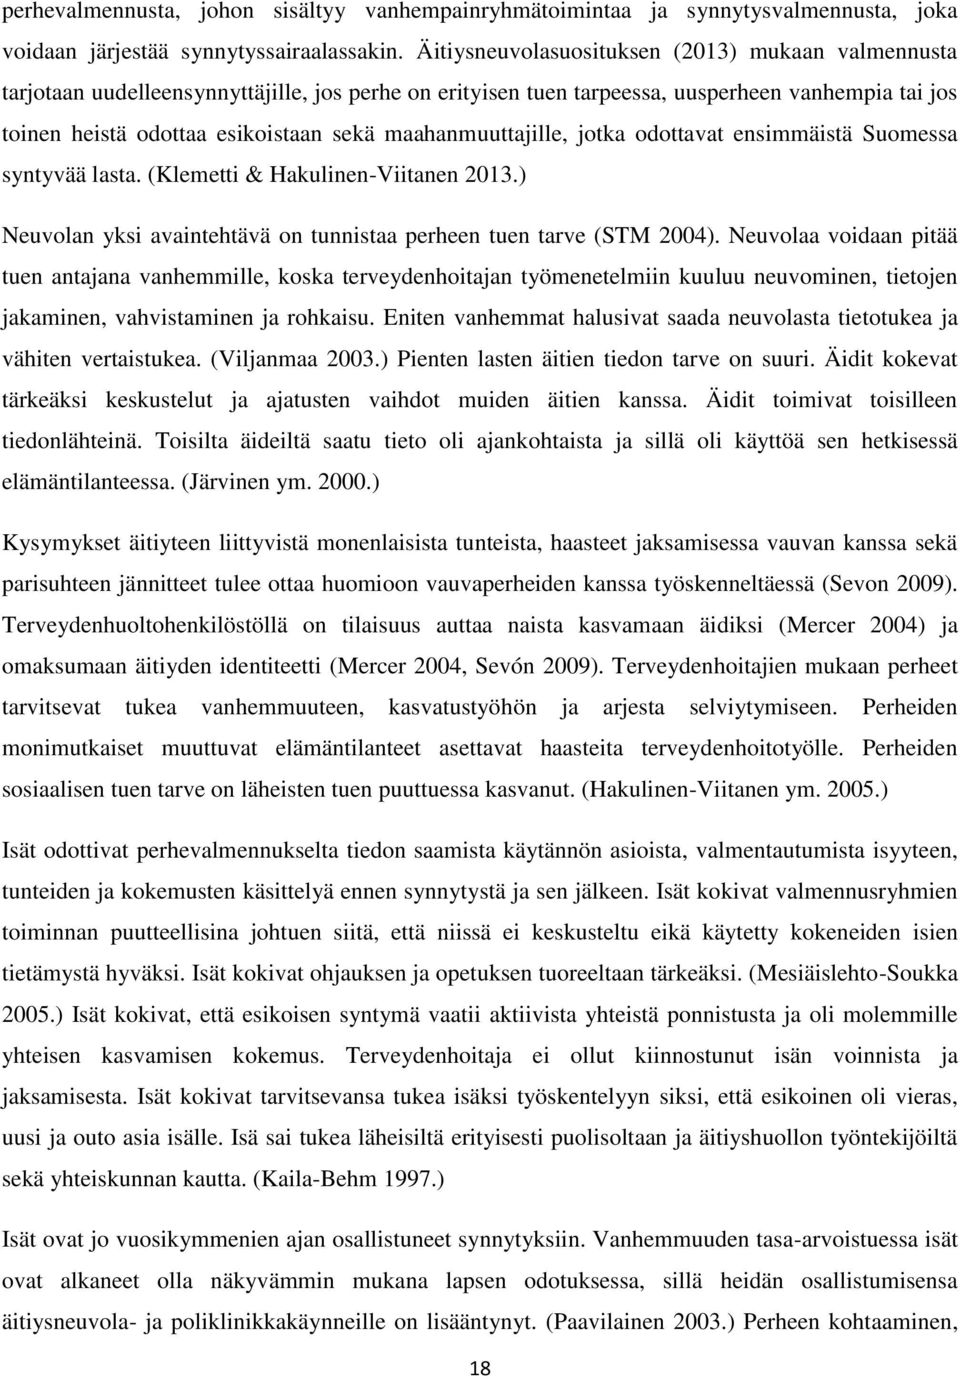 maahanmuuttajille, jotka odottavat ensimmäistä Suomessa syntyvää lasta. (Klemetti & Hakulinen-Viitanen 2013.) Neuvolan yksi avaintehtävä on tunnistaa perheen tuen tarve (STM 2004).